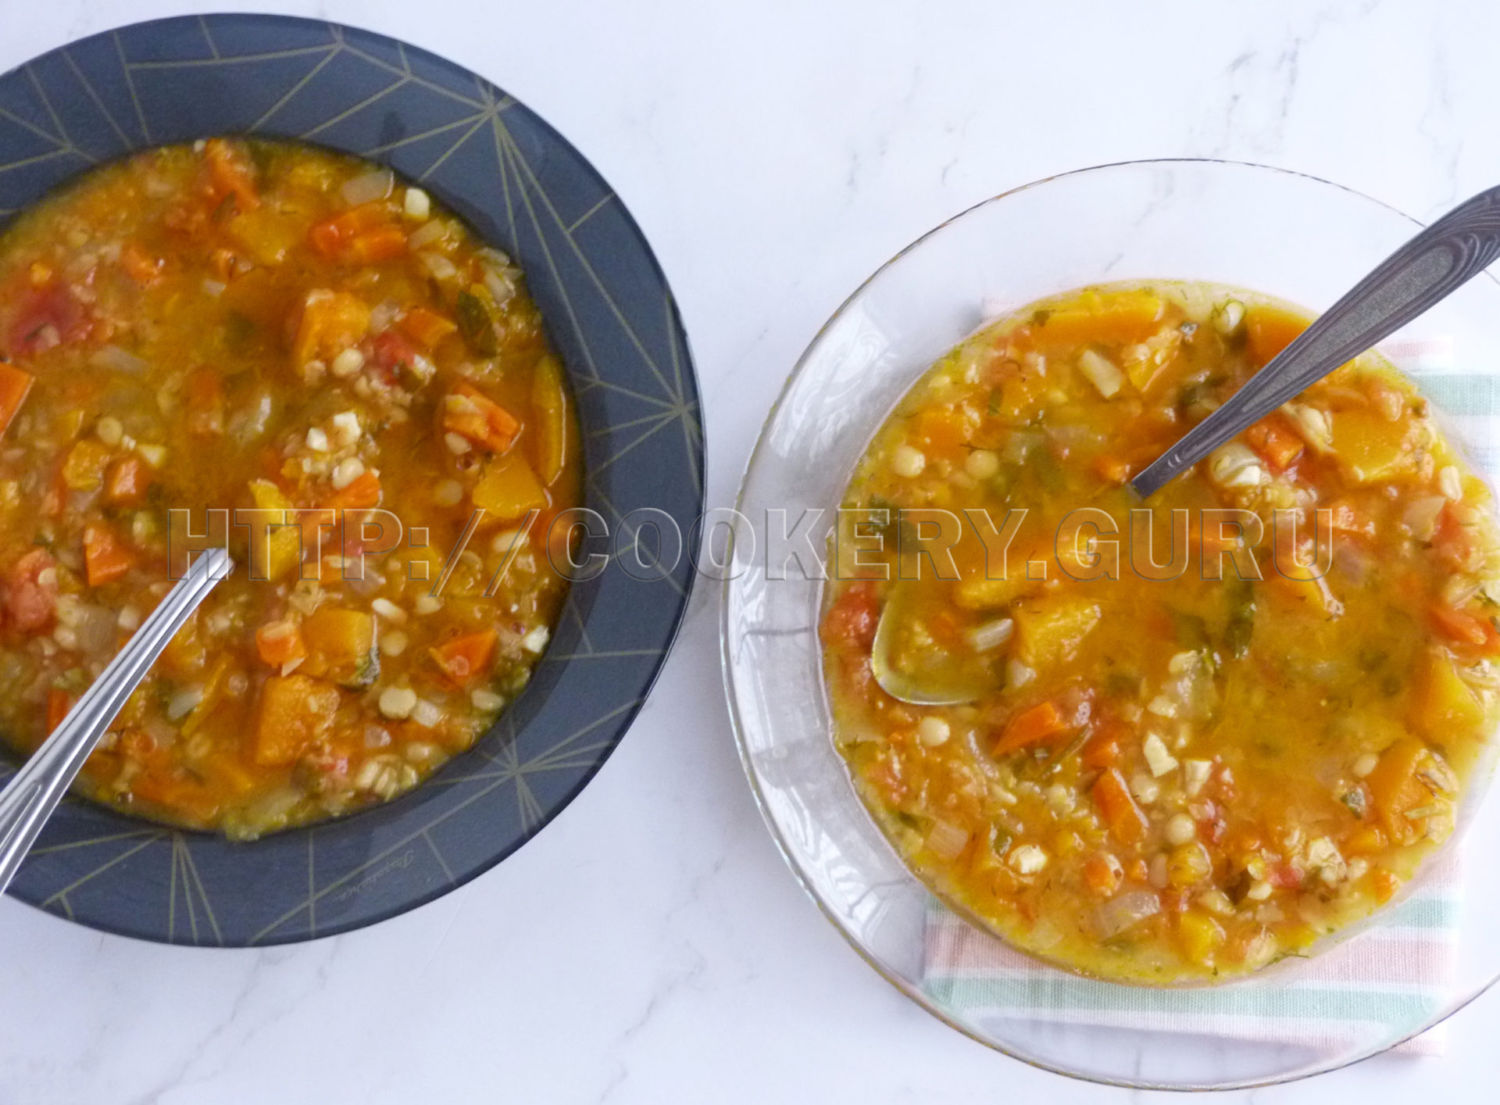 вкусный суп, тыквенный суп, суп из тыквы, простой суп рецепт, рецепт тыквенного супа, суп из тыквы рецепты, тыква готовить, приготовление супа из тыквы, суп из тыквы рецепты приготовления, вкусный суп из тыквы, как приготовить суп из тыквы, рецепт вкусного супа из тыквы, суп тыквой фото, как приготовить тыквенный суп, тыквенный суп фото, суп из тыквы рецепты с фото, как приготовить вкусный суп из тыквы, суп из тыквы пошаговый, вкусный тыквенный суп, тыквенный суп пошагово, тыквенный суп рецепт с фото пошагово, гороховый суп с тыквой, суп гороховый с тыквой рецепт, суп с тыквой и горохом, тыквенный суп с горохом